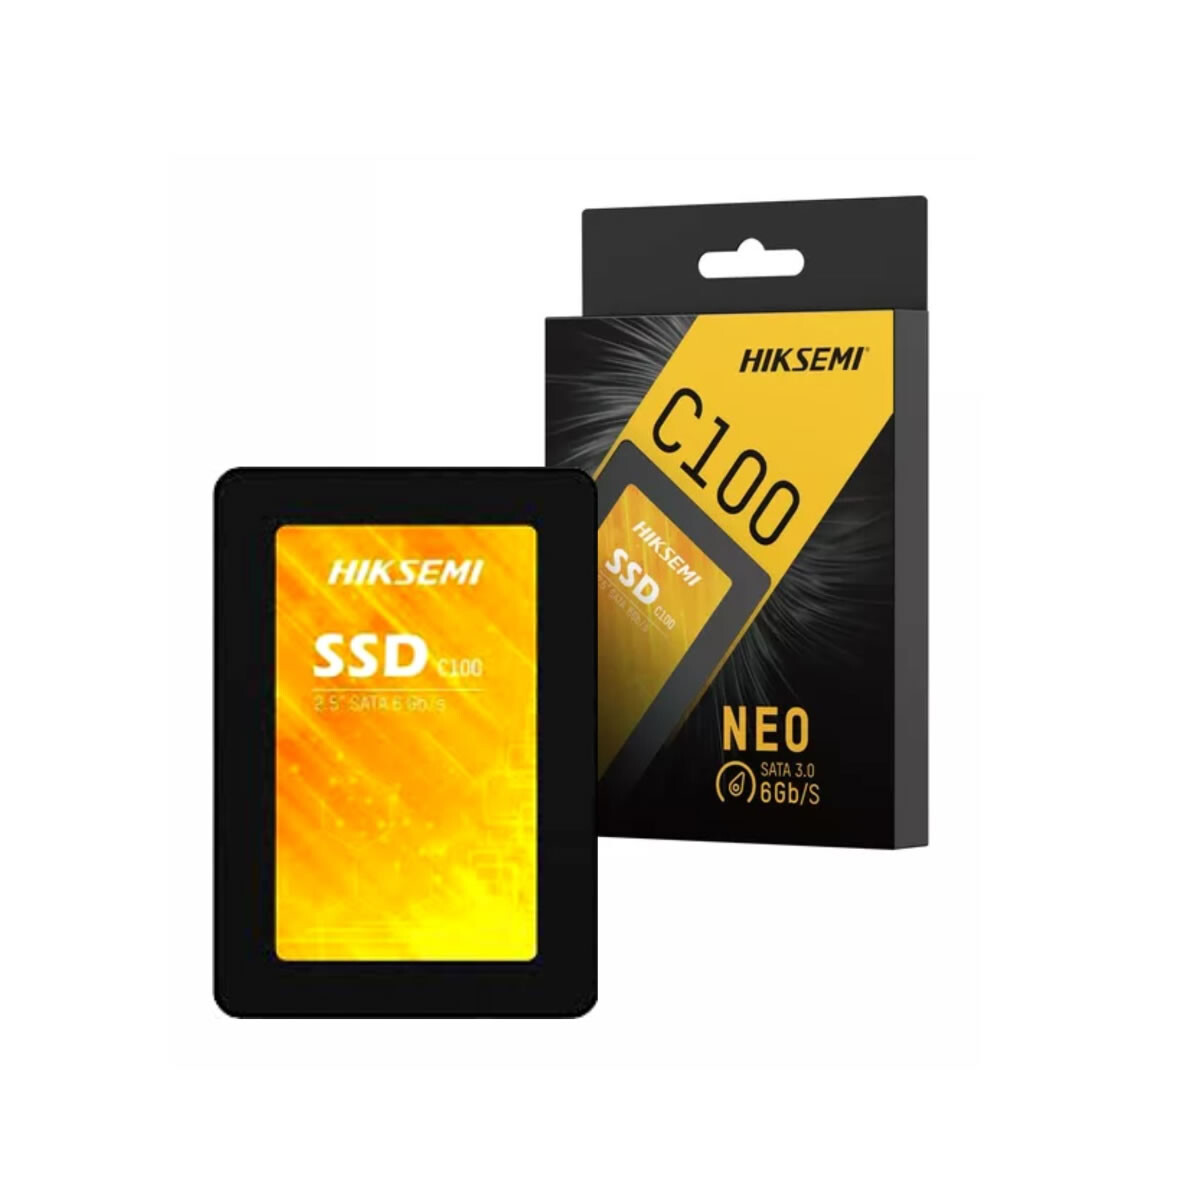 Disco Hiksemi SSD 960GB Neo C100 